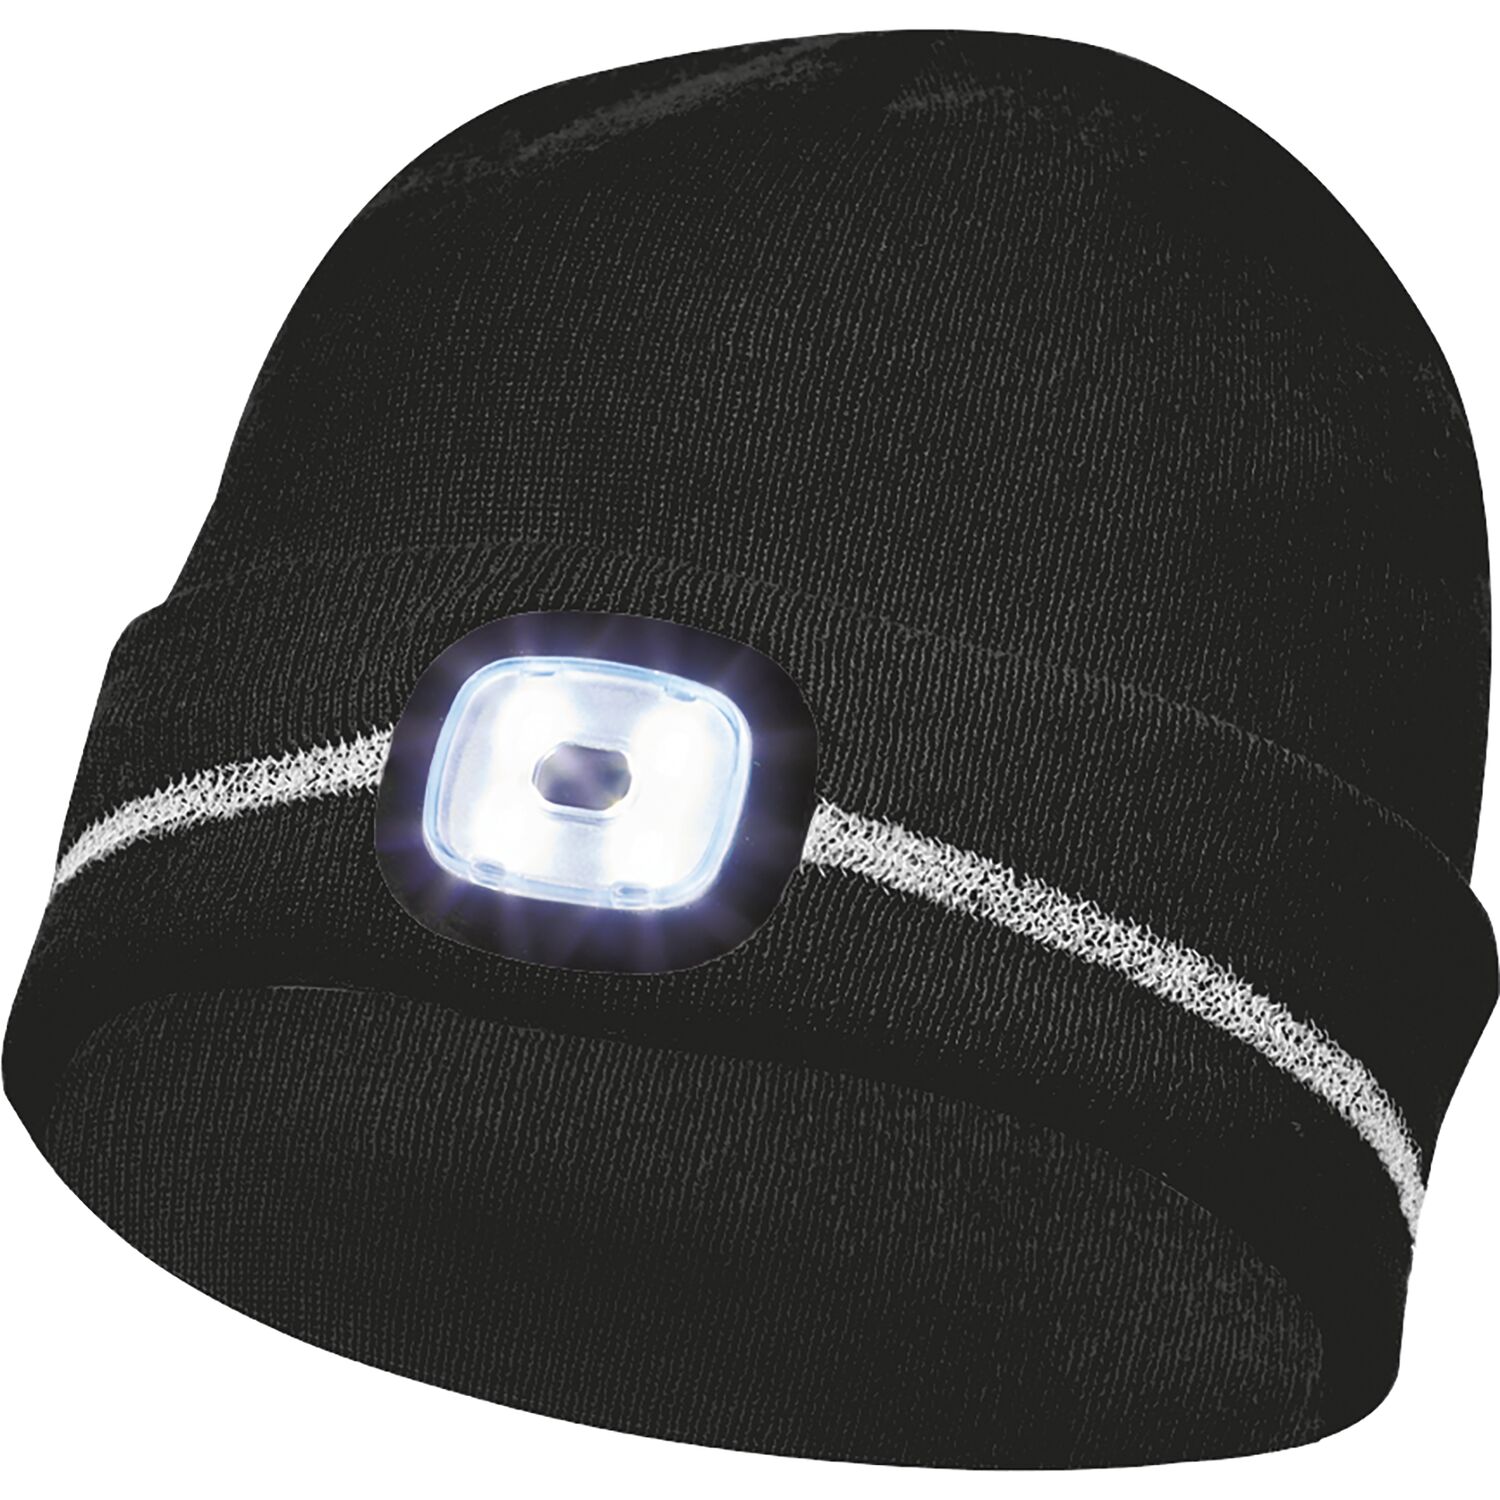 Gebol Haube mit LED-Lampe, Mütze mit Licht und Refkektionsstreifen, schwarz